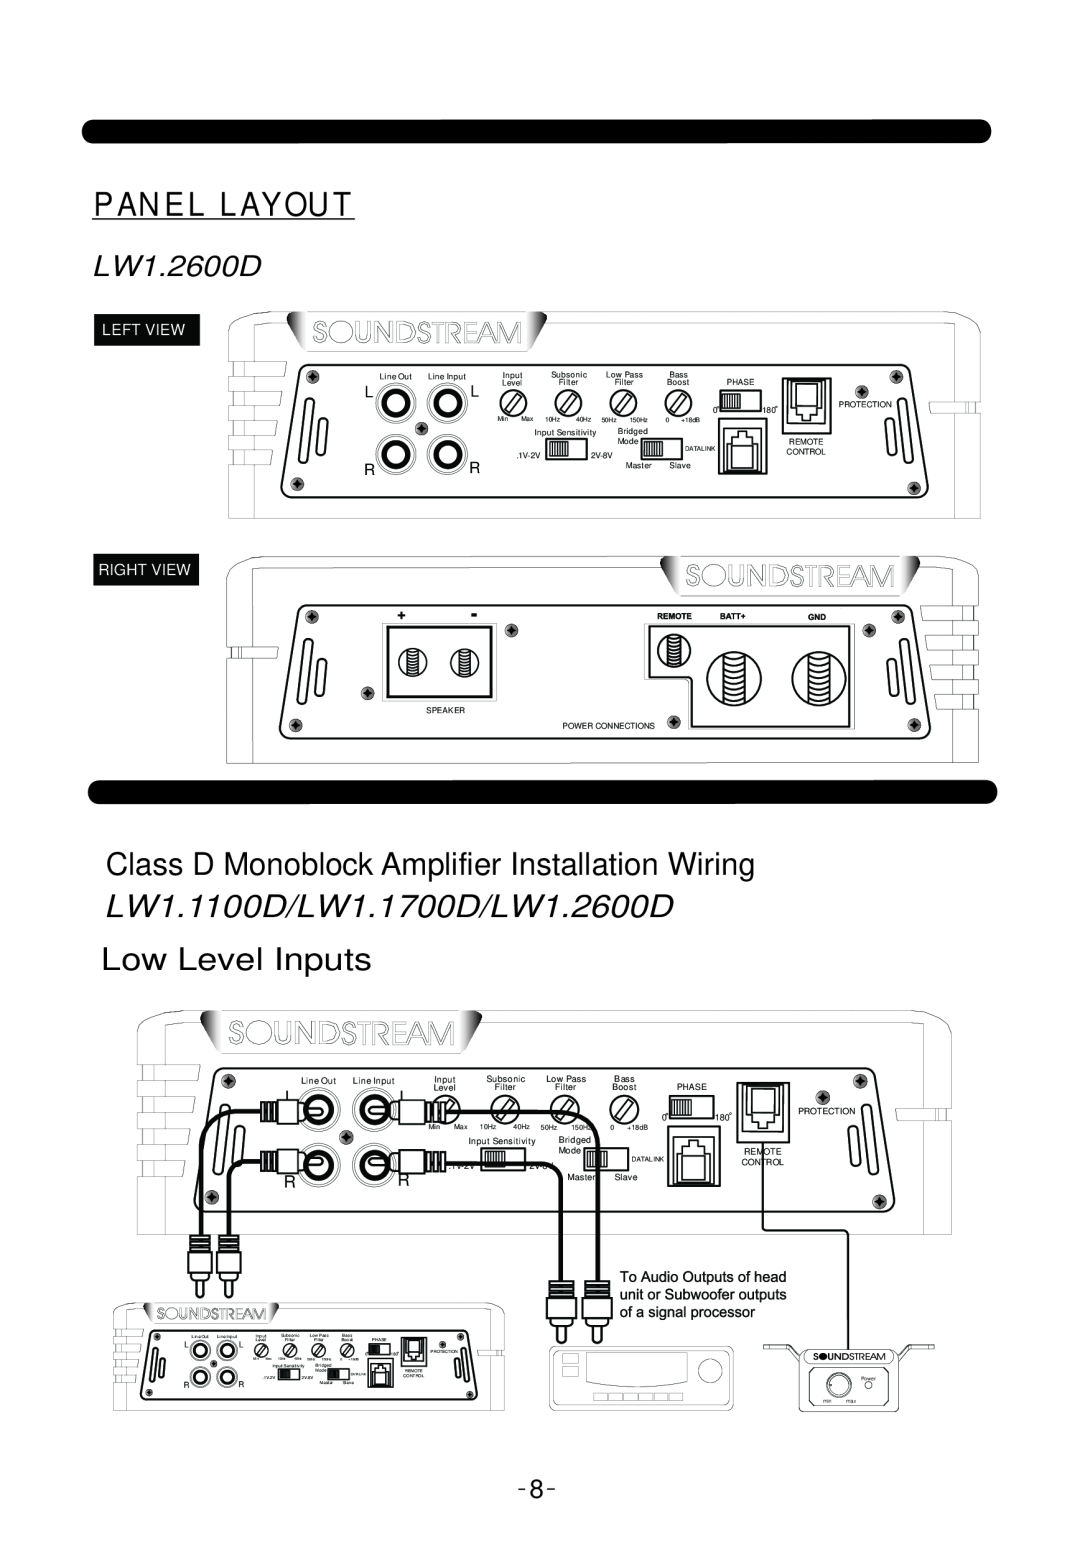 Soundstream Technologies Class D Monoblock Amplifier Installation Wiring, LW1.1100D/LW1.1700D/LW1.2600D, Panel Layout 